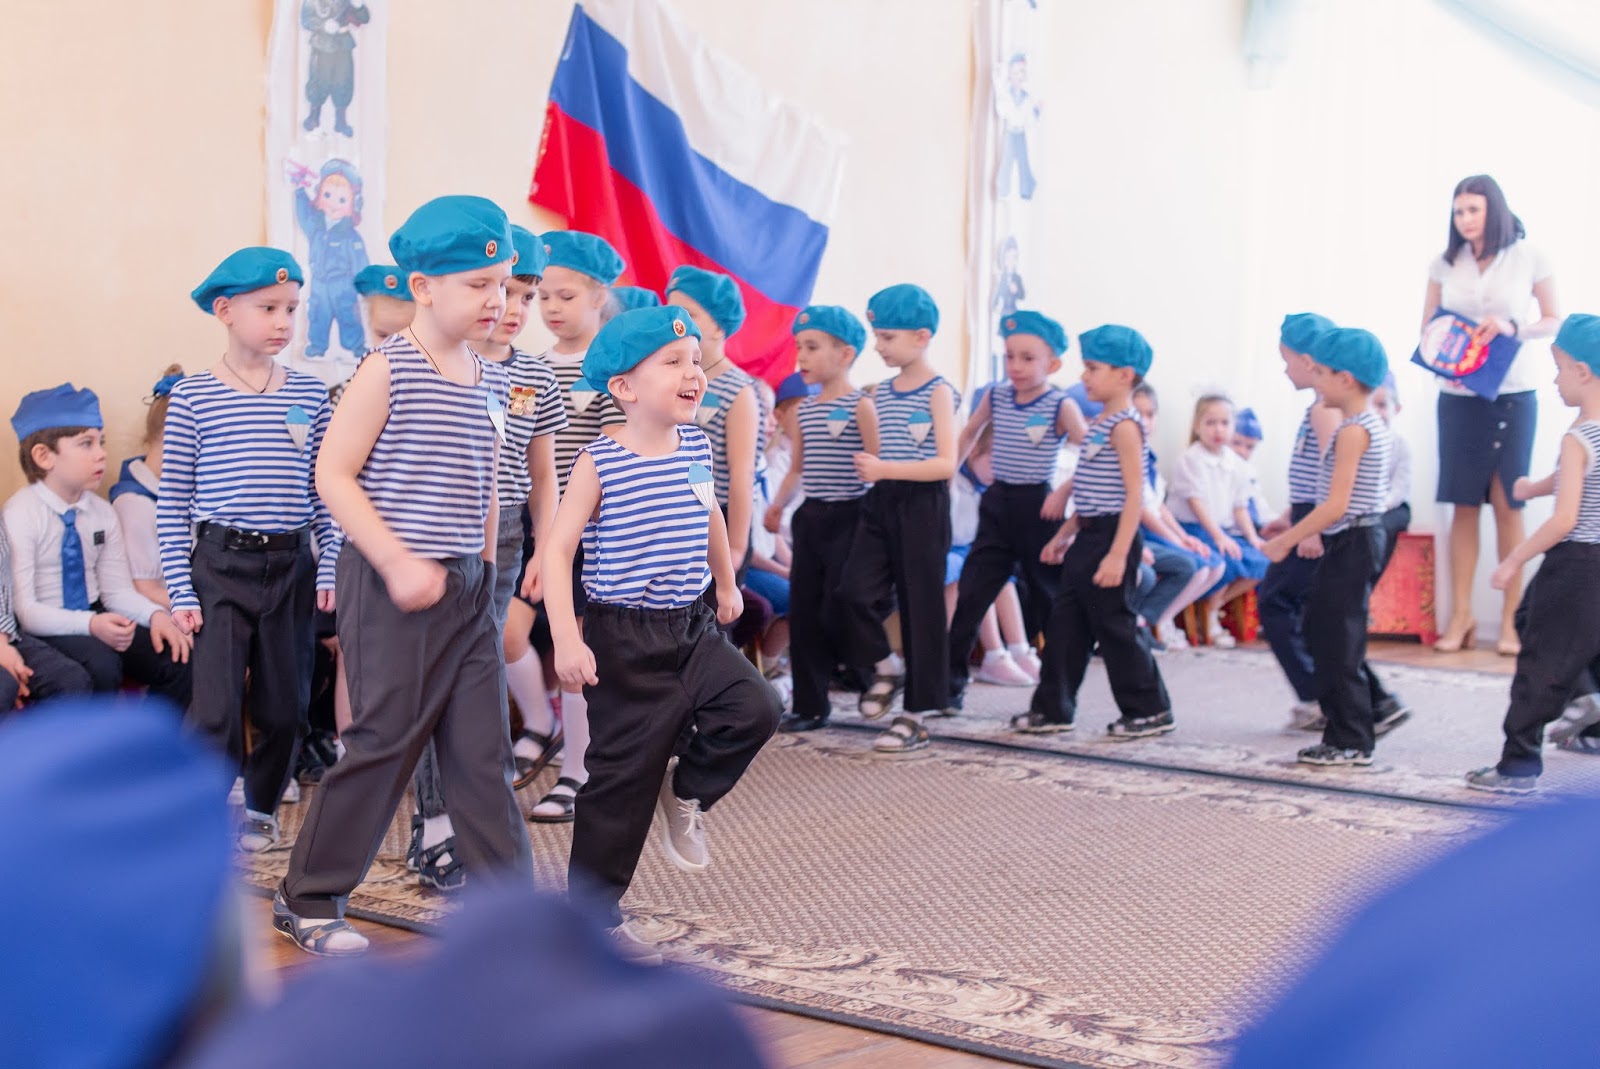 Сценарий защитники отечества в школе. Омск здесь парад к 23 февраля фото отчет.